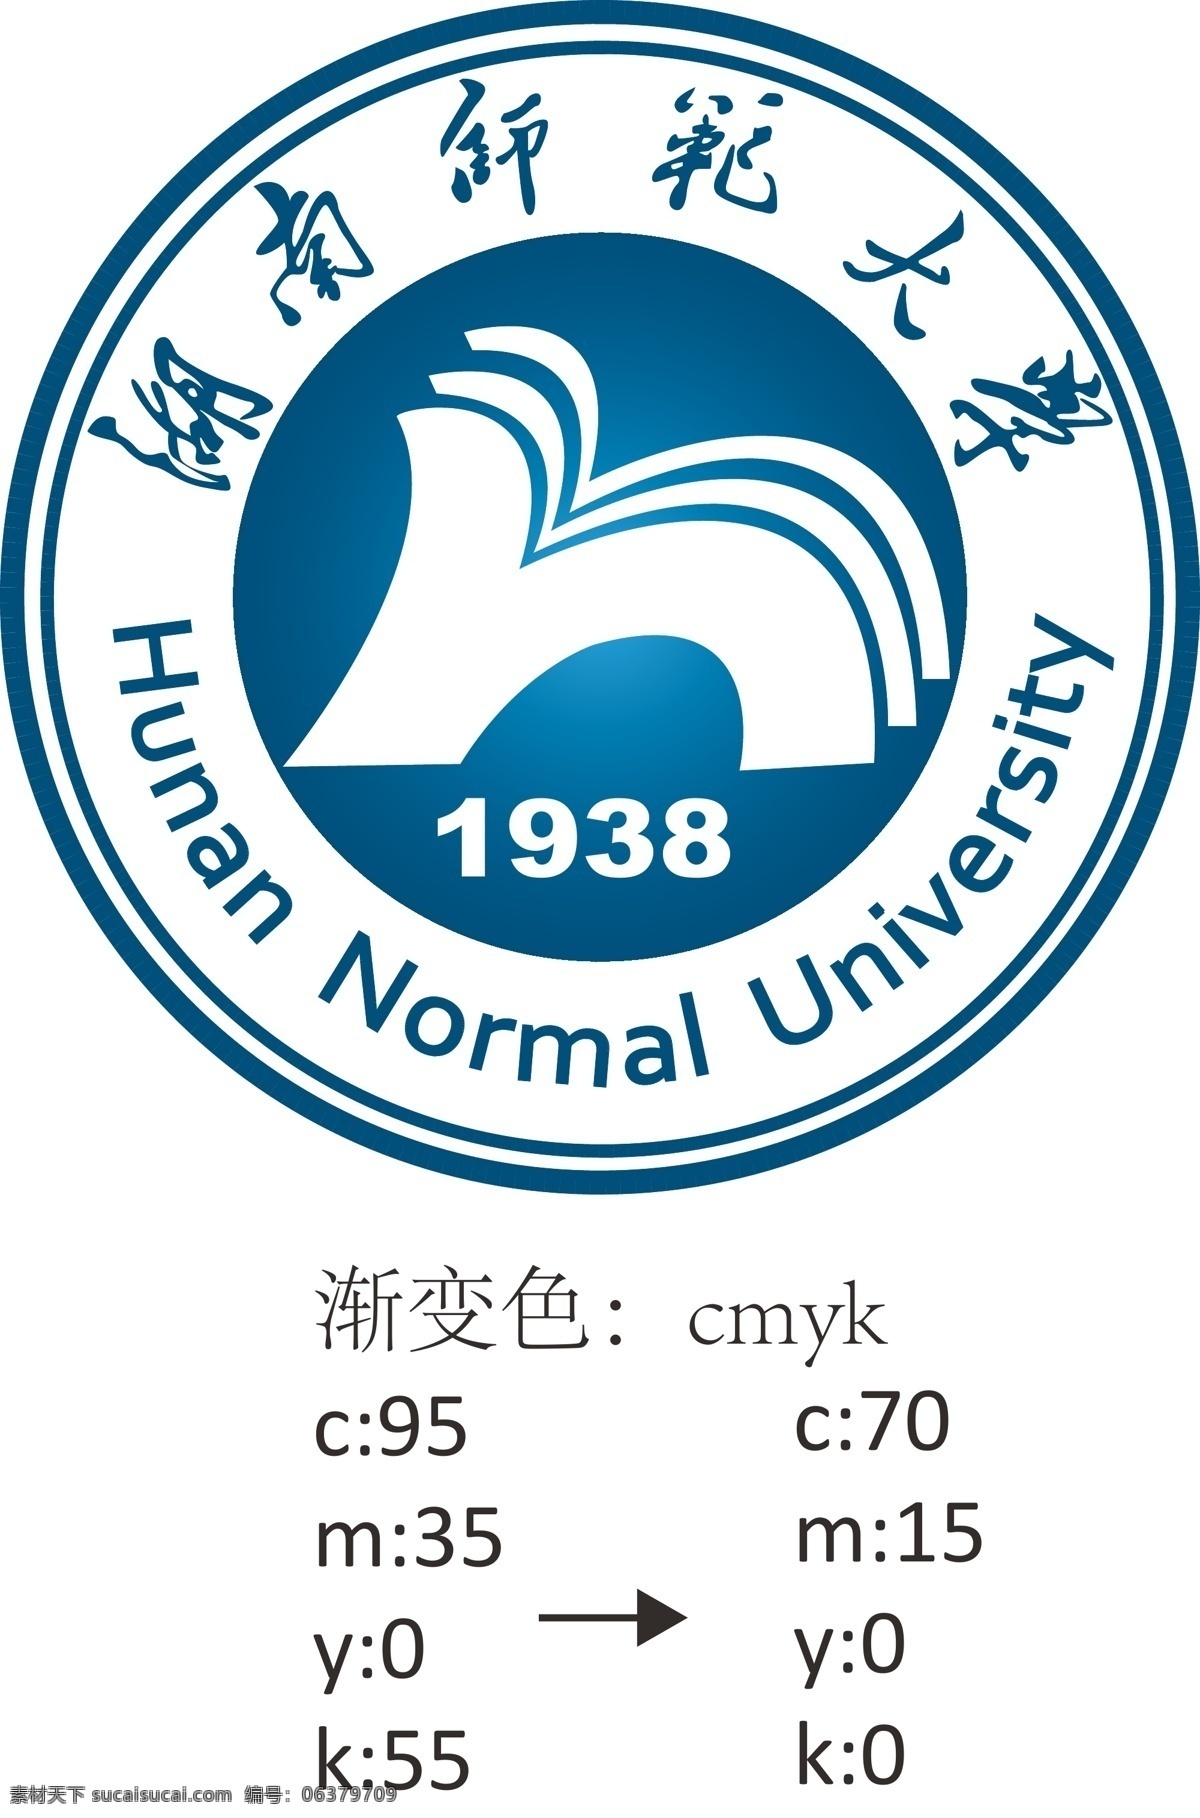 湖南师范大学 校徽 矢量 蓝色 标志系列 logo设计